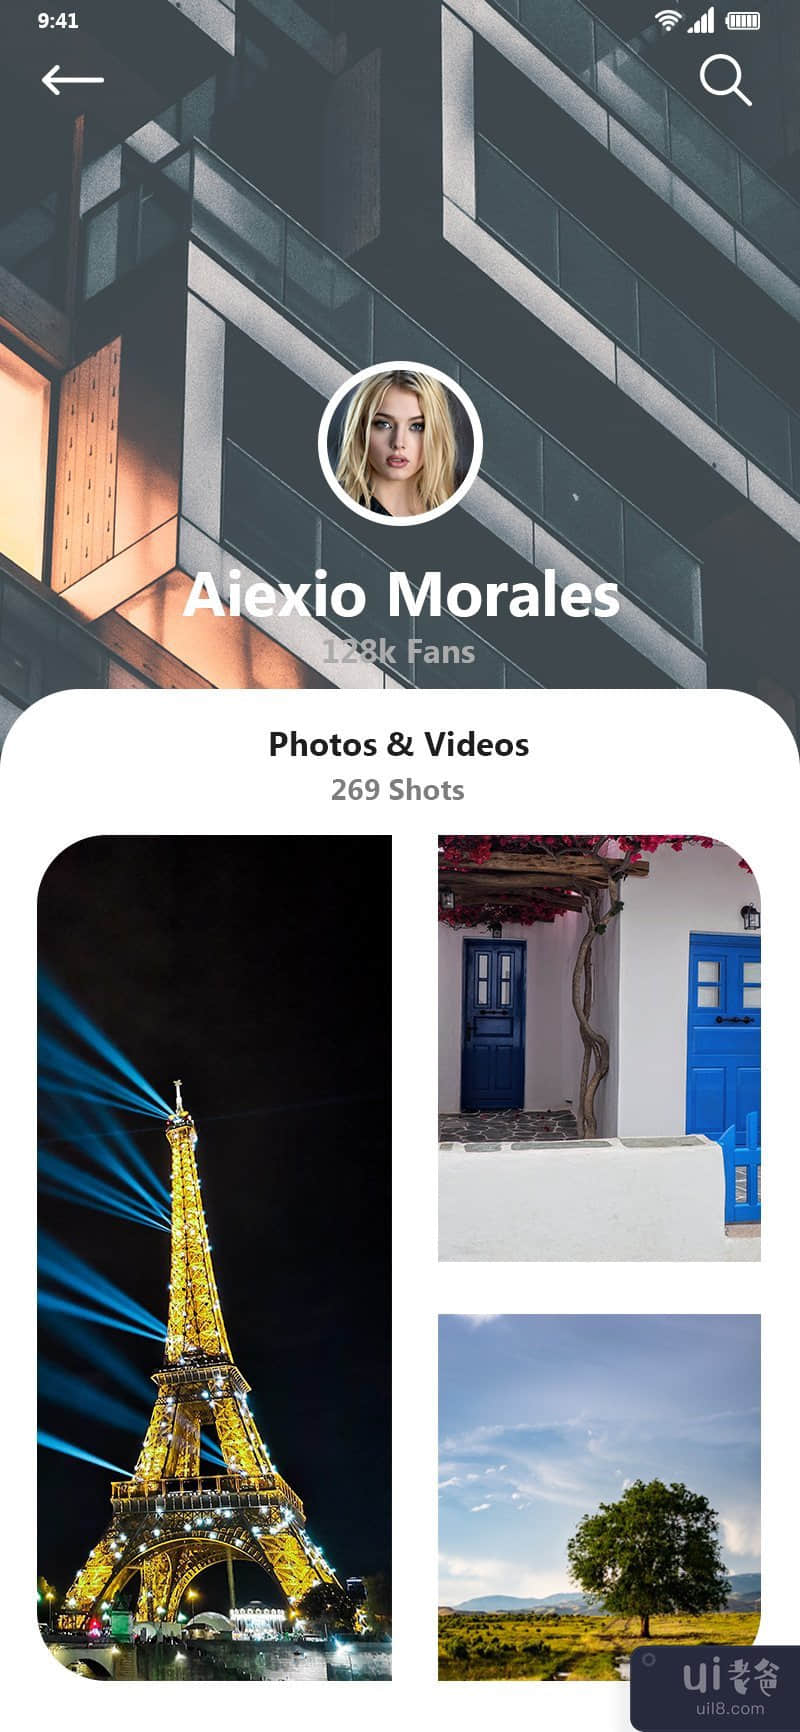 Aiexio 莫拉莱斯用户界面(Aiexio Morales UI)插图3